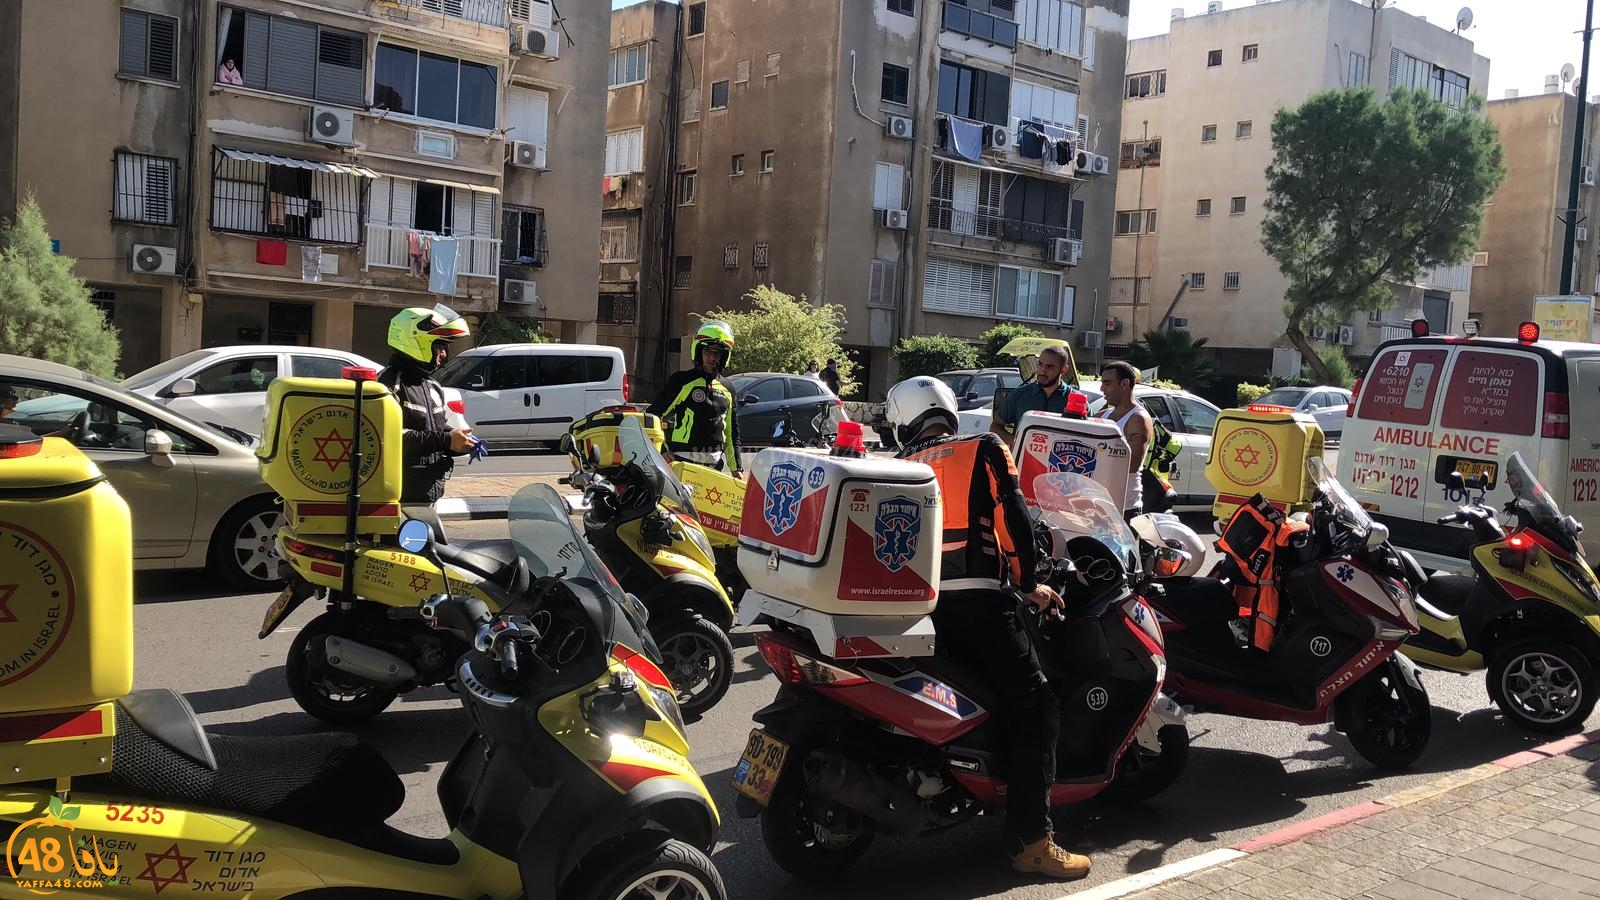  يافا: اصابة متوسطة لشخصين بحادث دهس في شارع ييفت الرئيس 